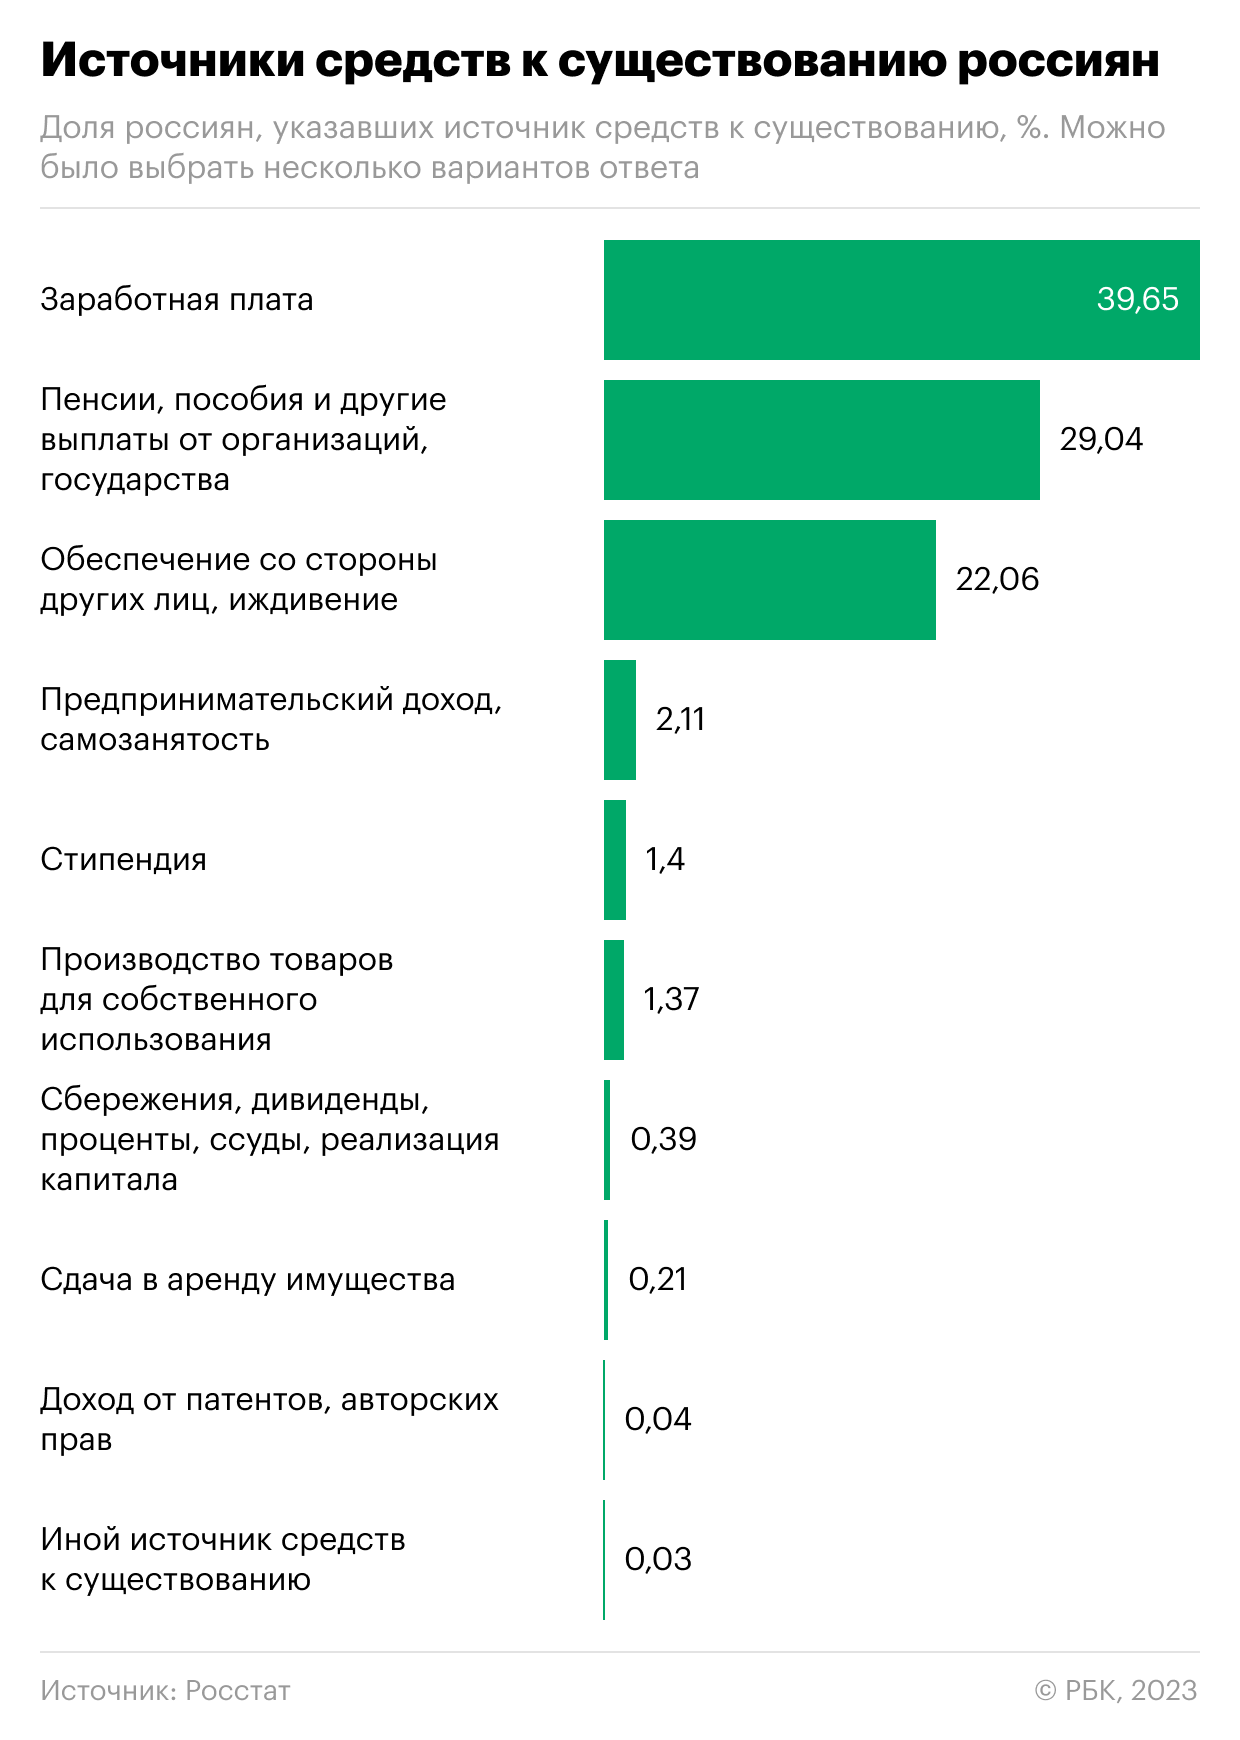 Откуда россияне получают доходы. Инфографика